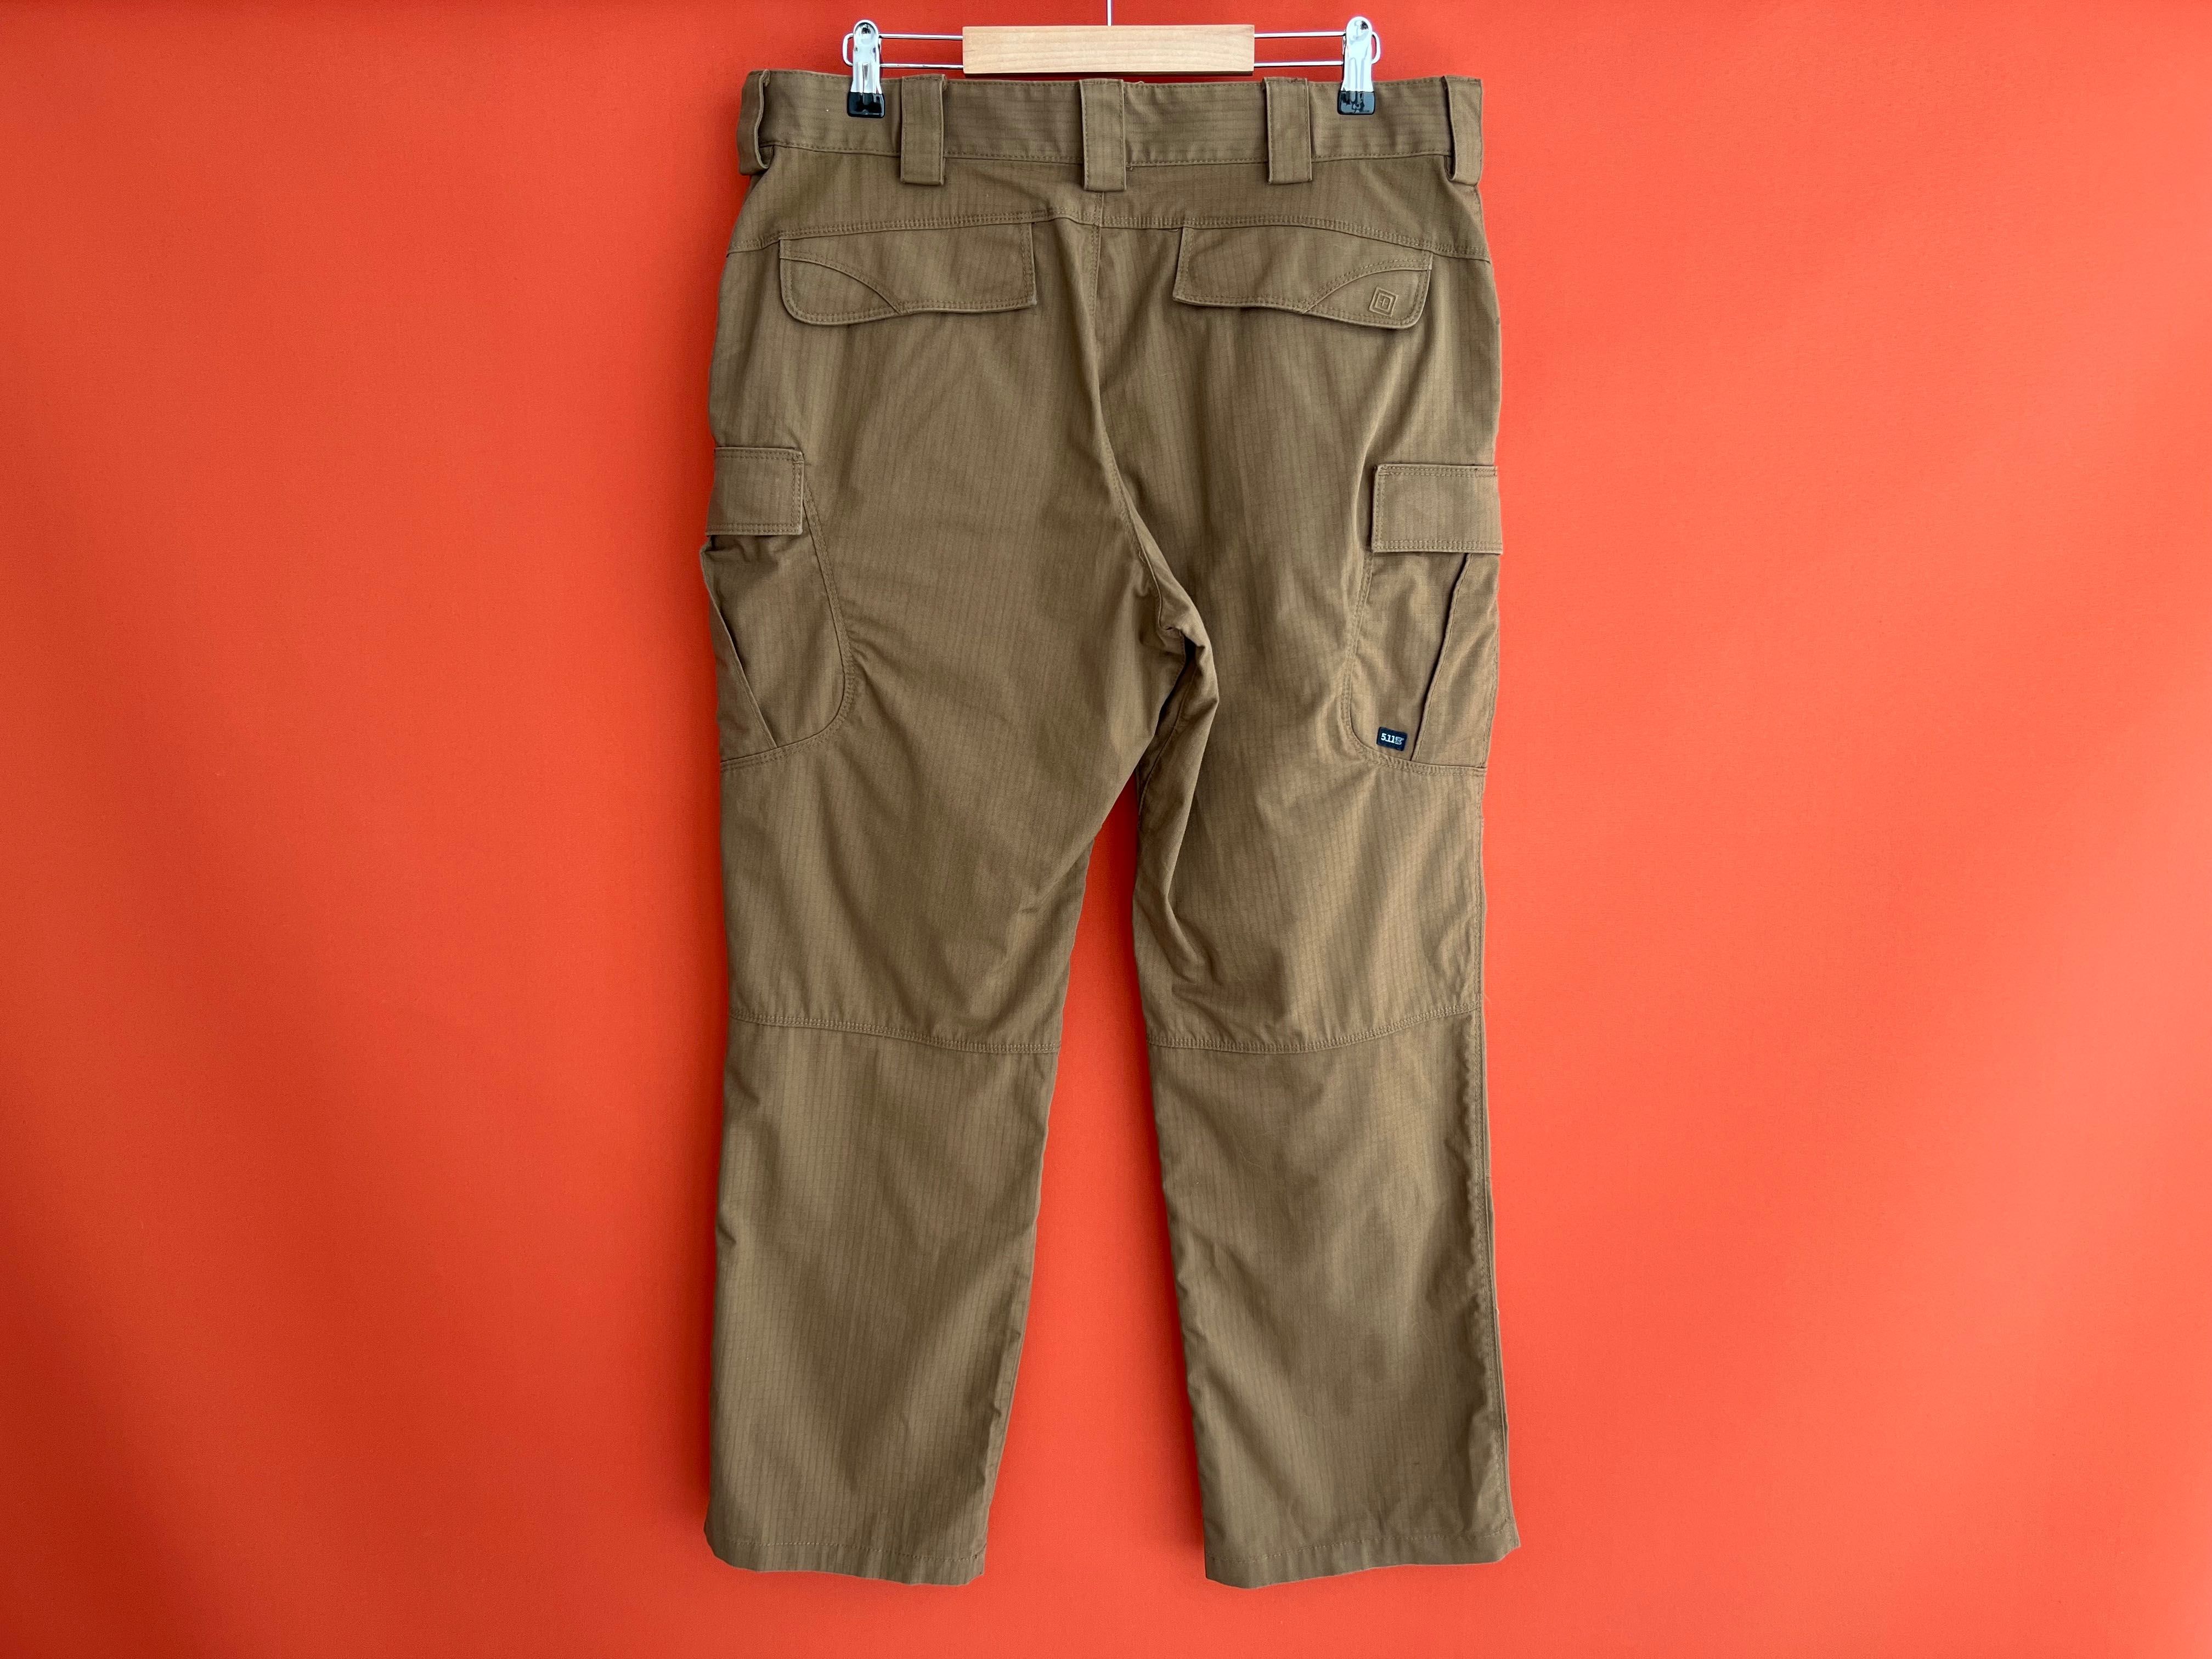 ??? 5.11 Tactical мужские тактические штаны брюки карго размер 36 Б У